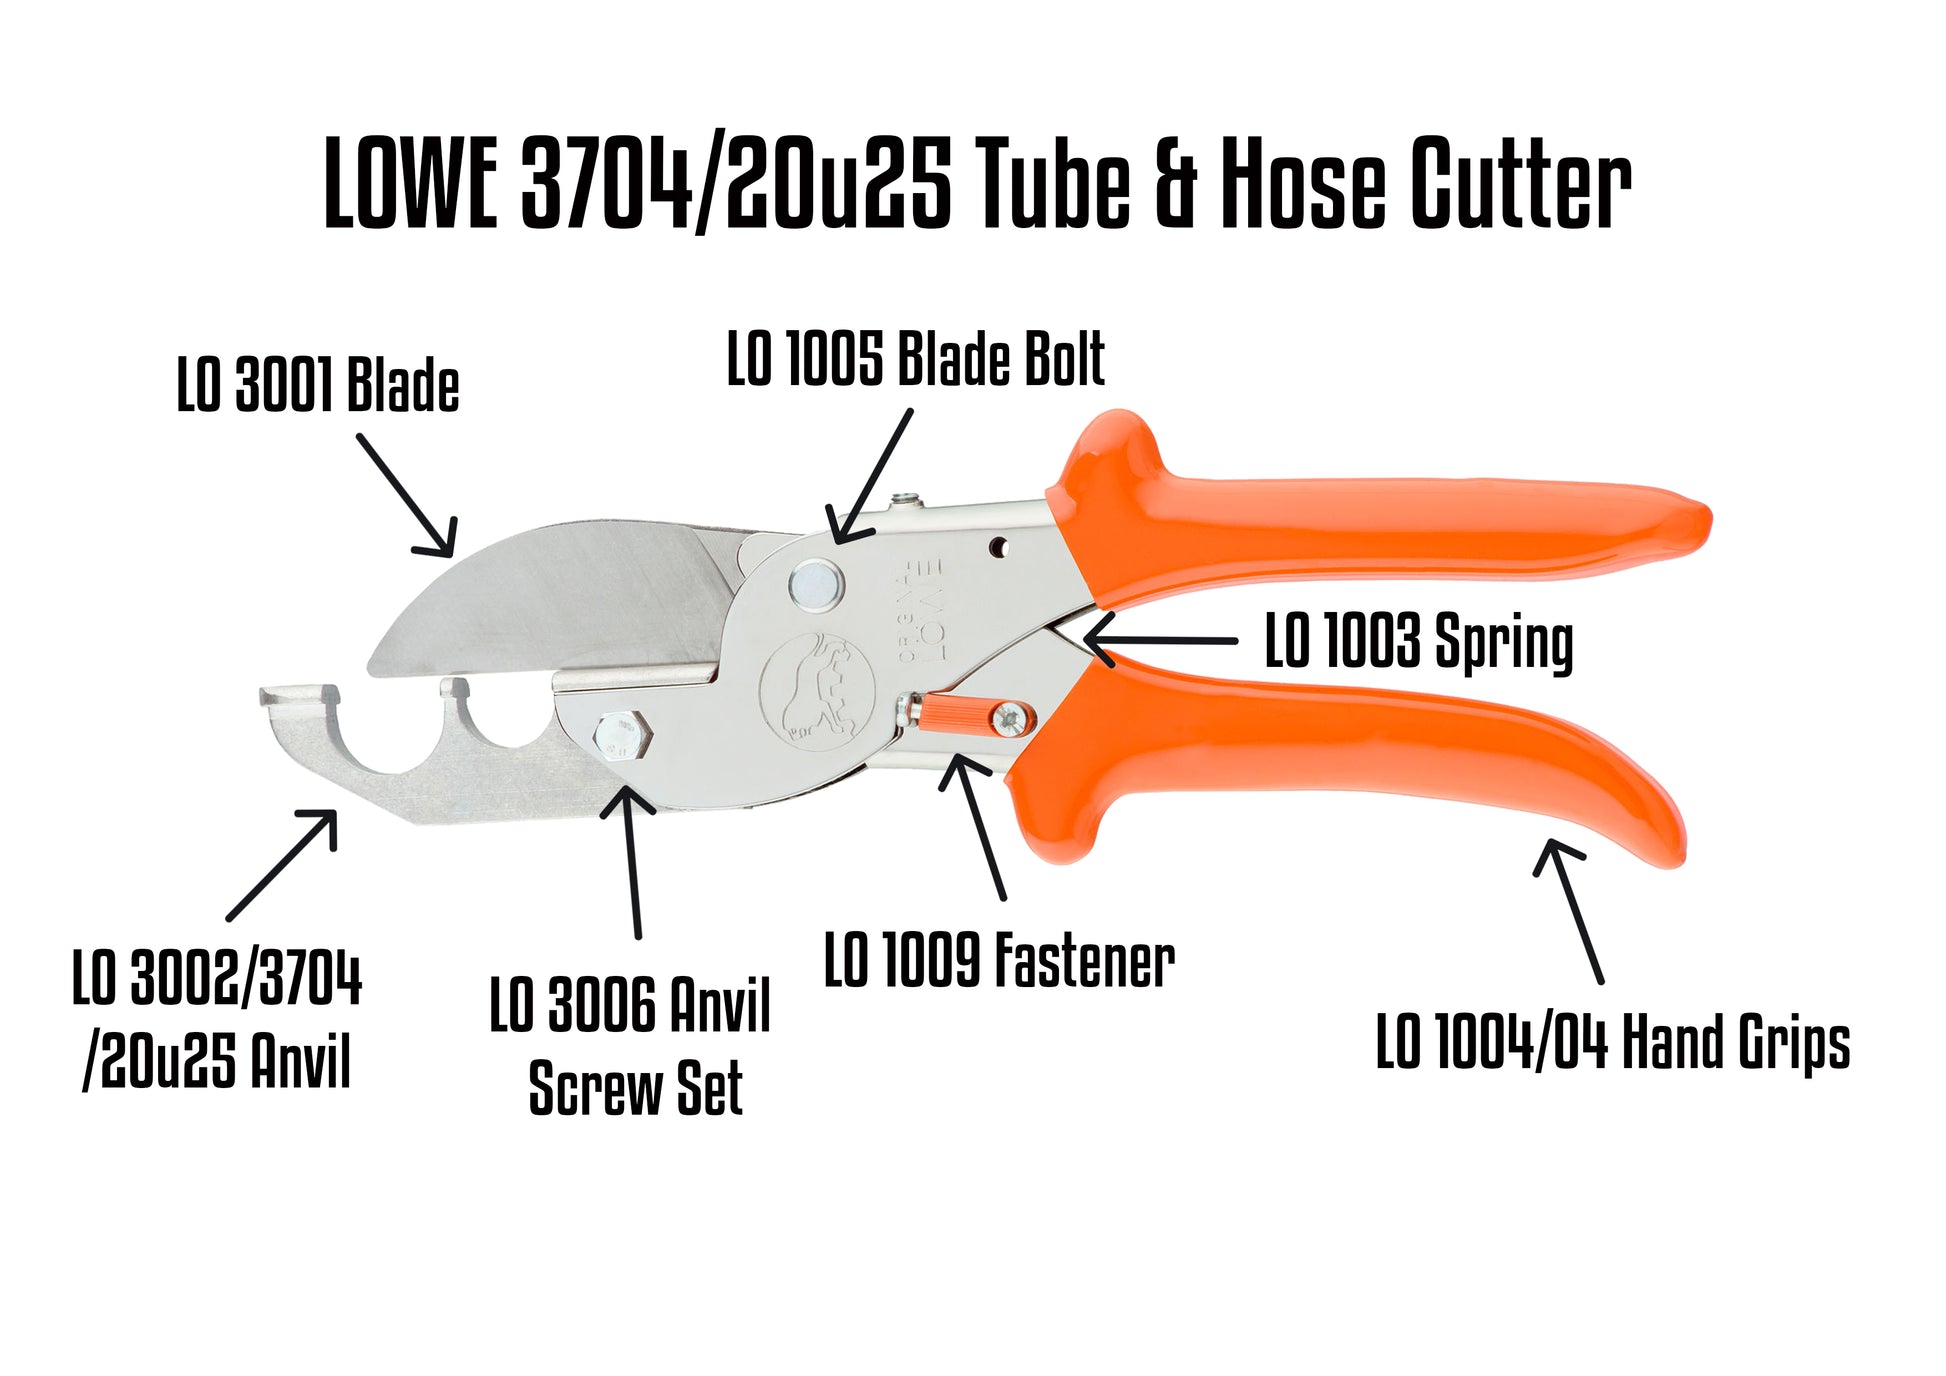 Lowe 3704/20u25 Parts Guide